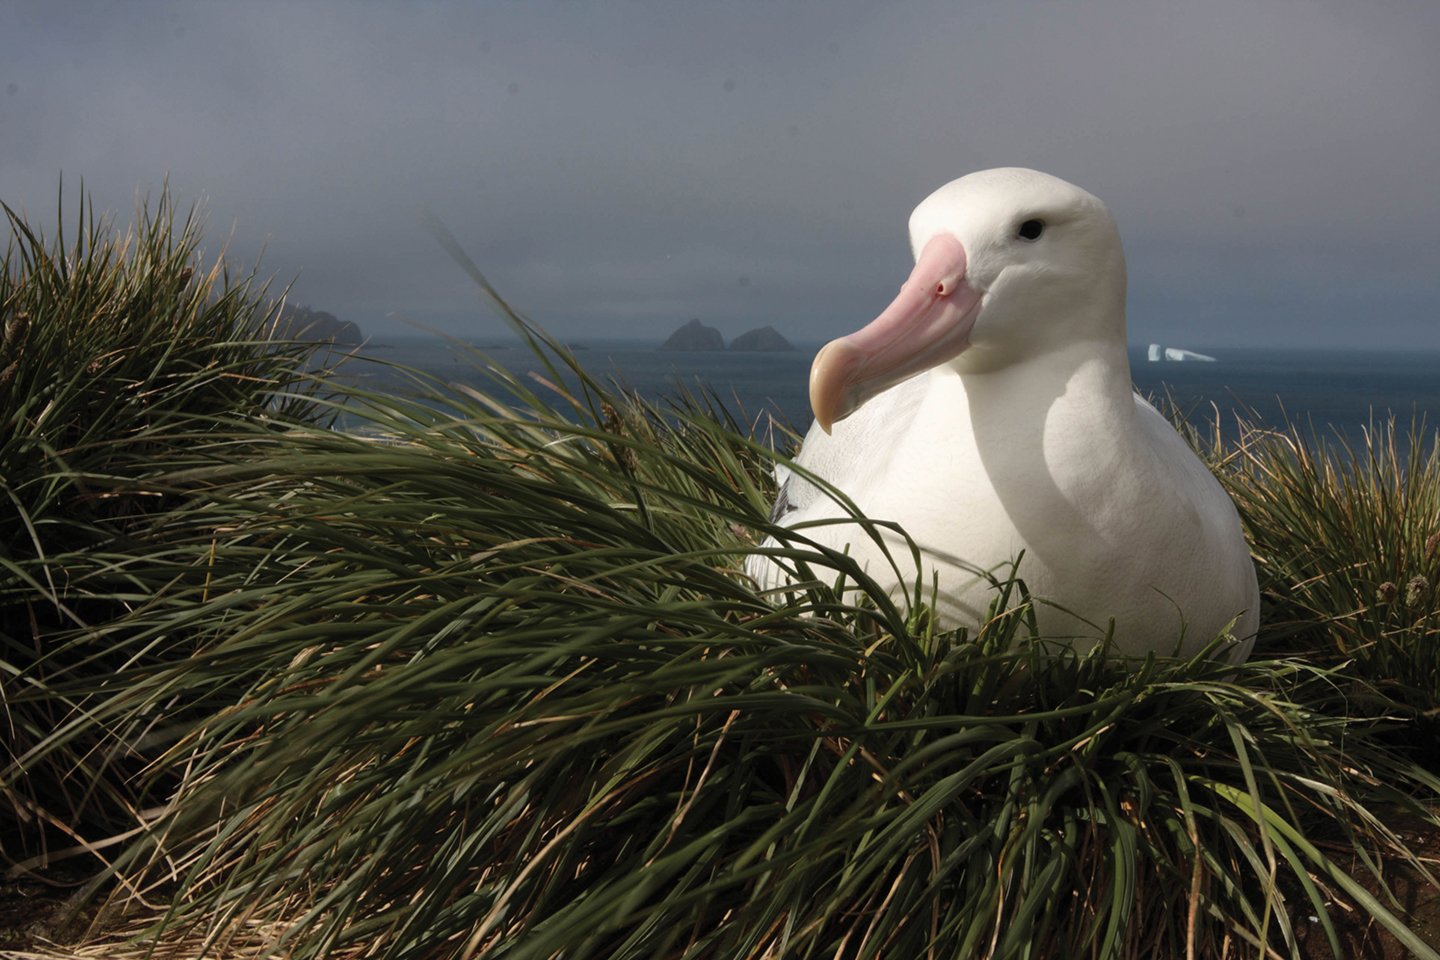 https://cms-assets.theasc.com/Documenting-Nature-Albatross.jpeg